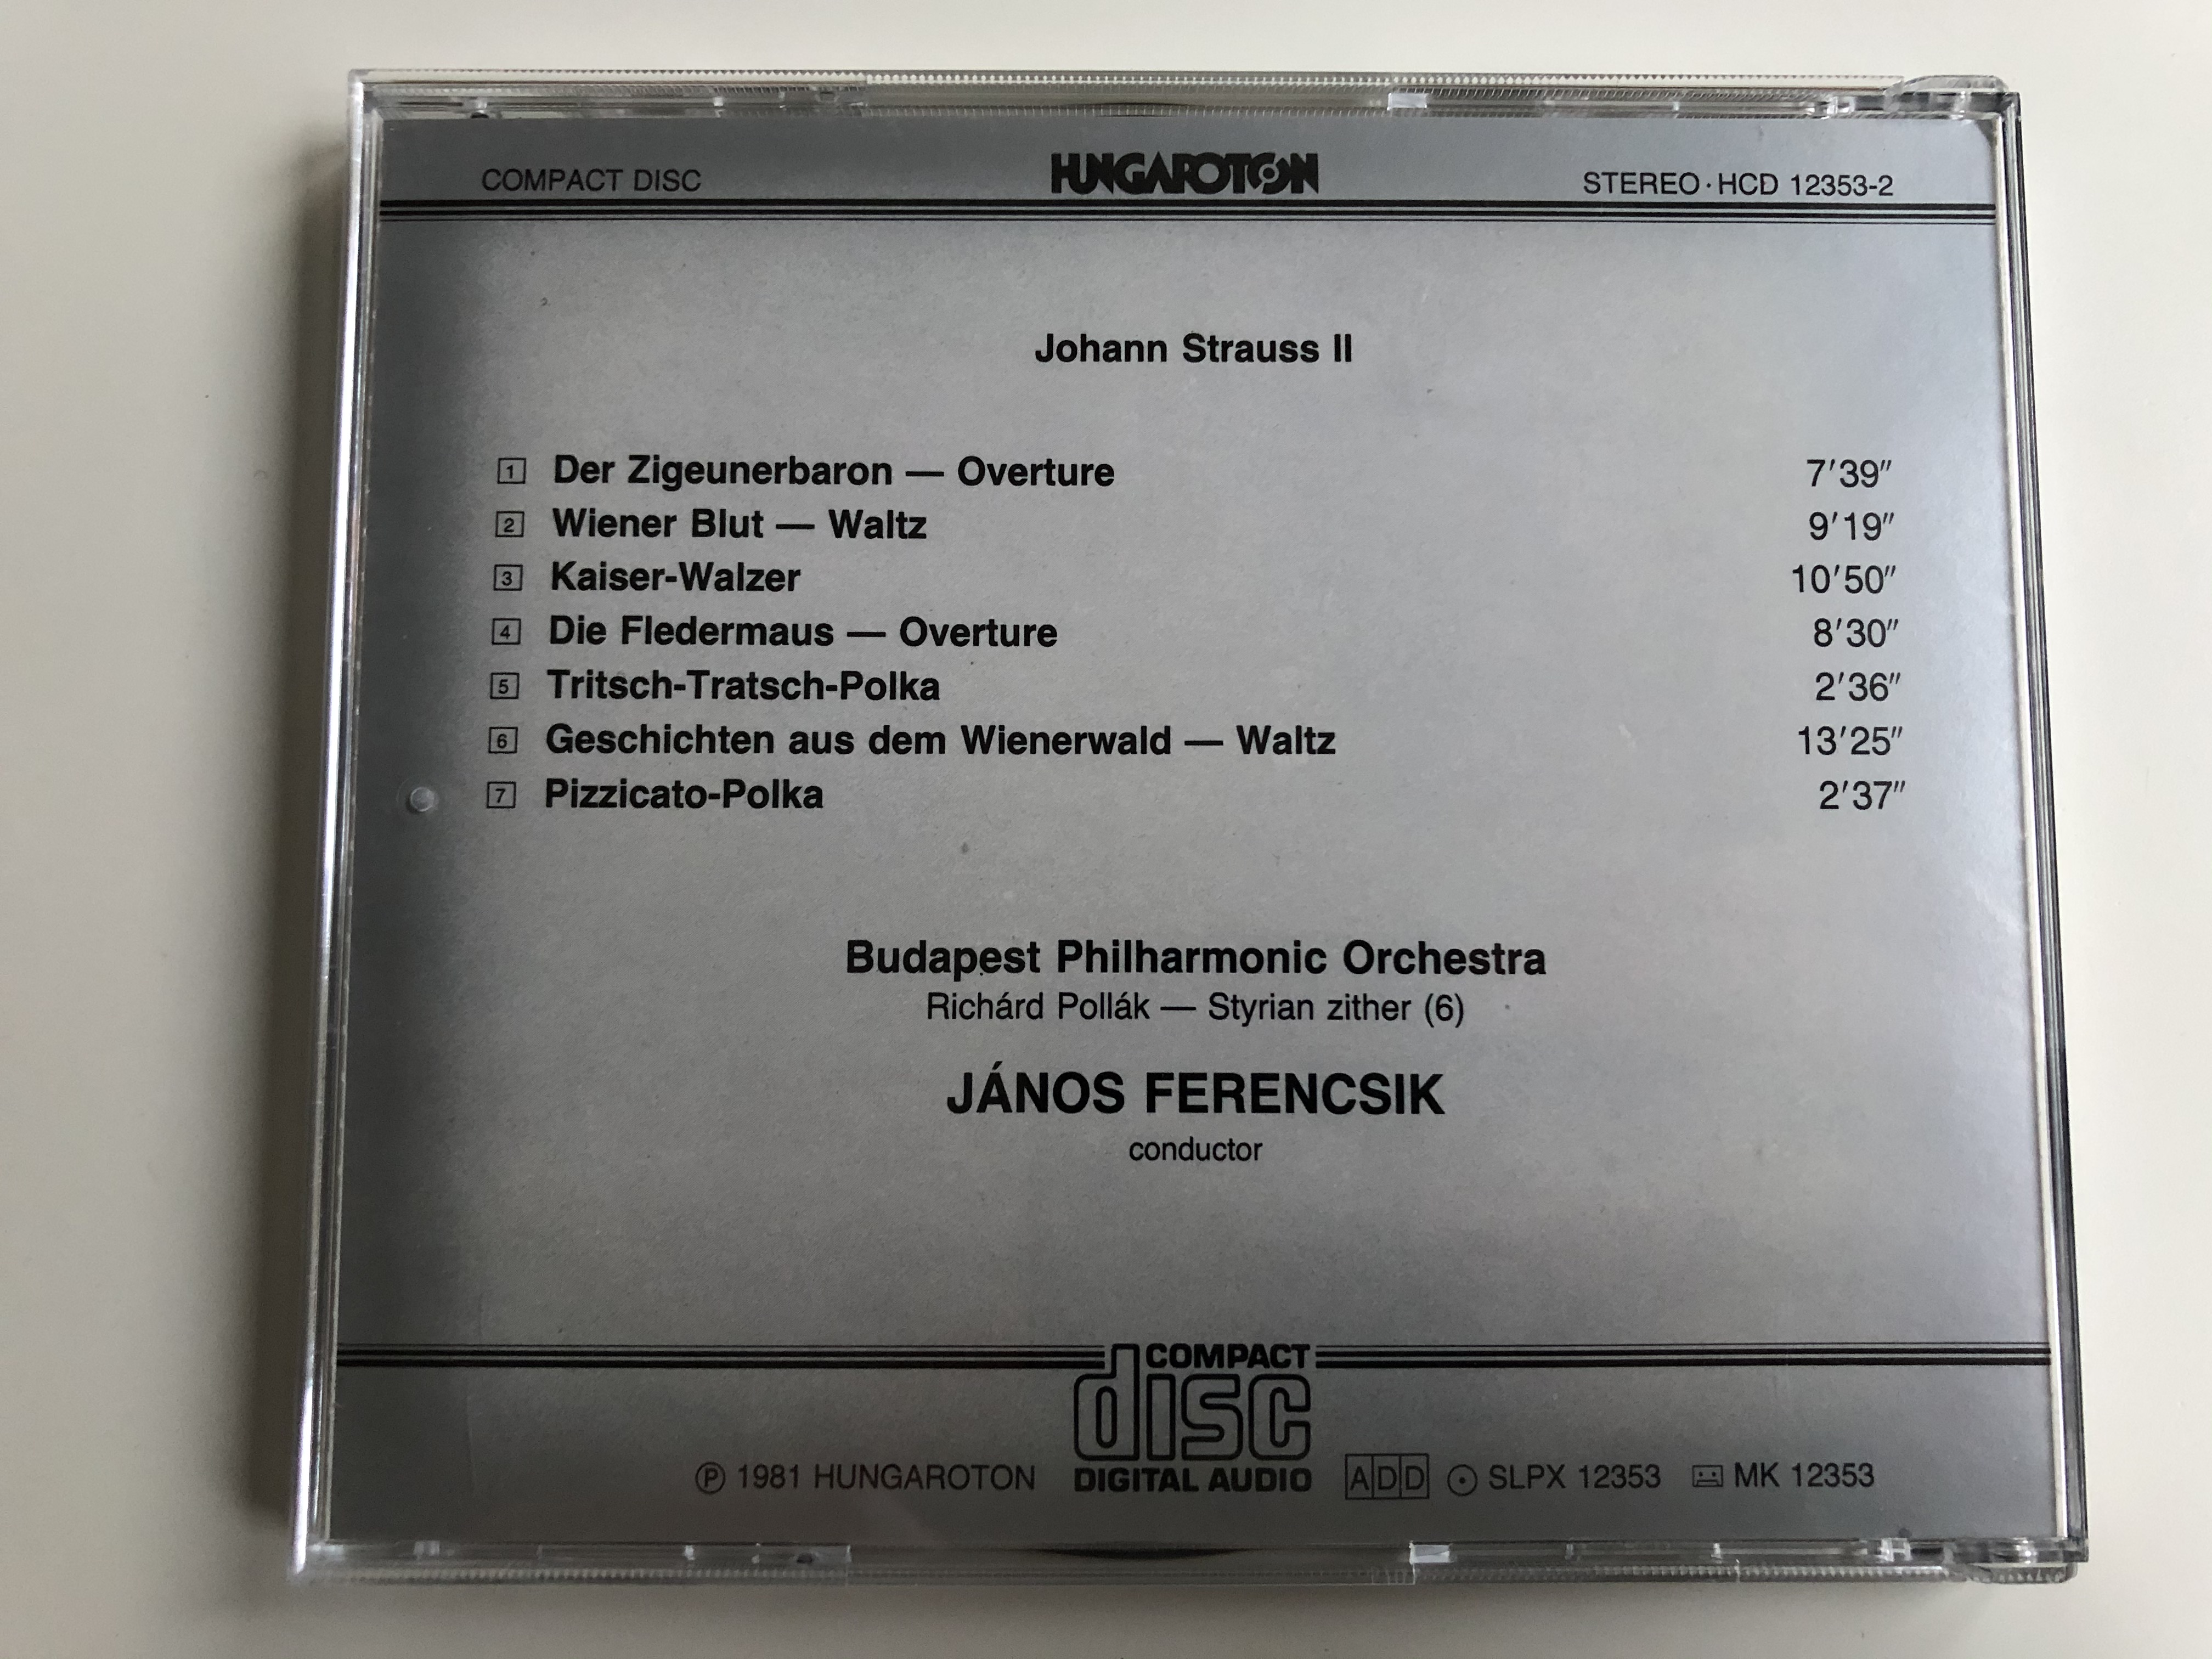 johann-strauss-overtures-waltzes-polkas-j-nos-ferencsik-budapest-philharmonic-orchestra-hungaroton-audio-cd-1981-stereo-hcd-12353-2-7-.jpg